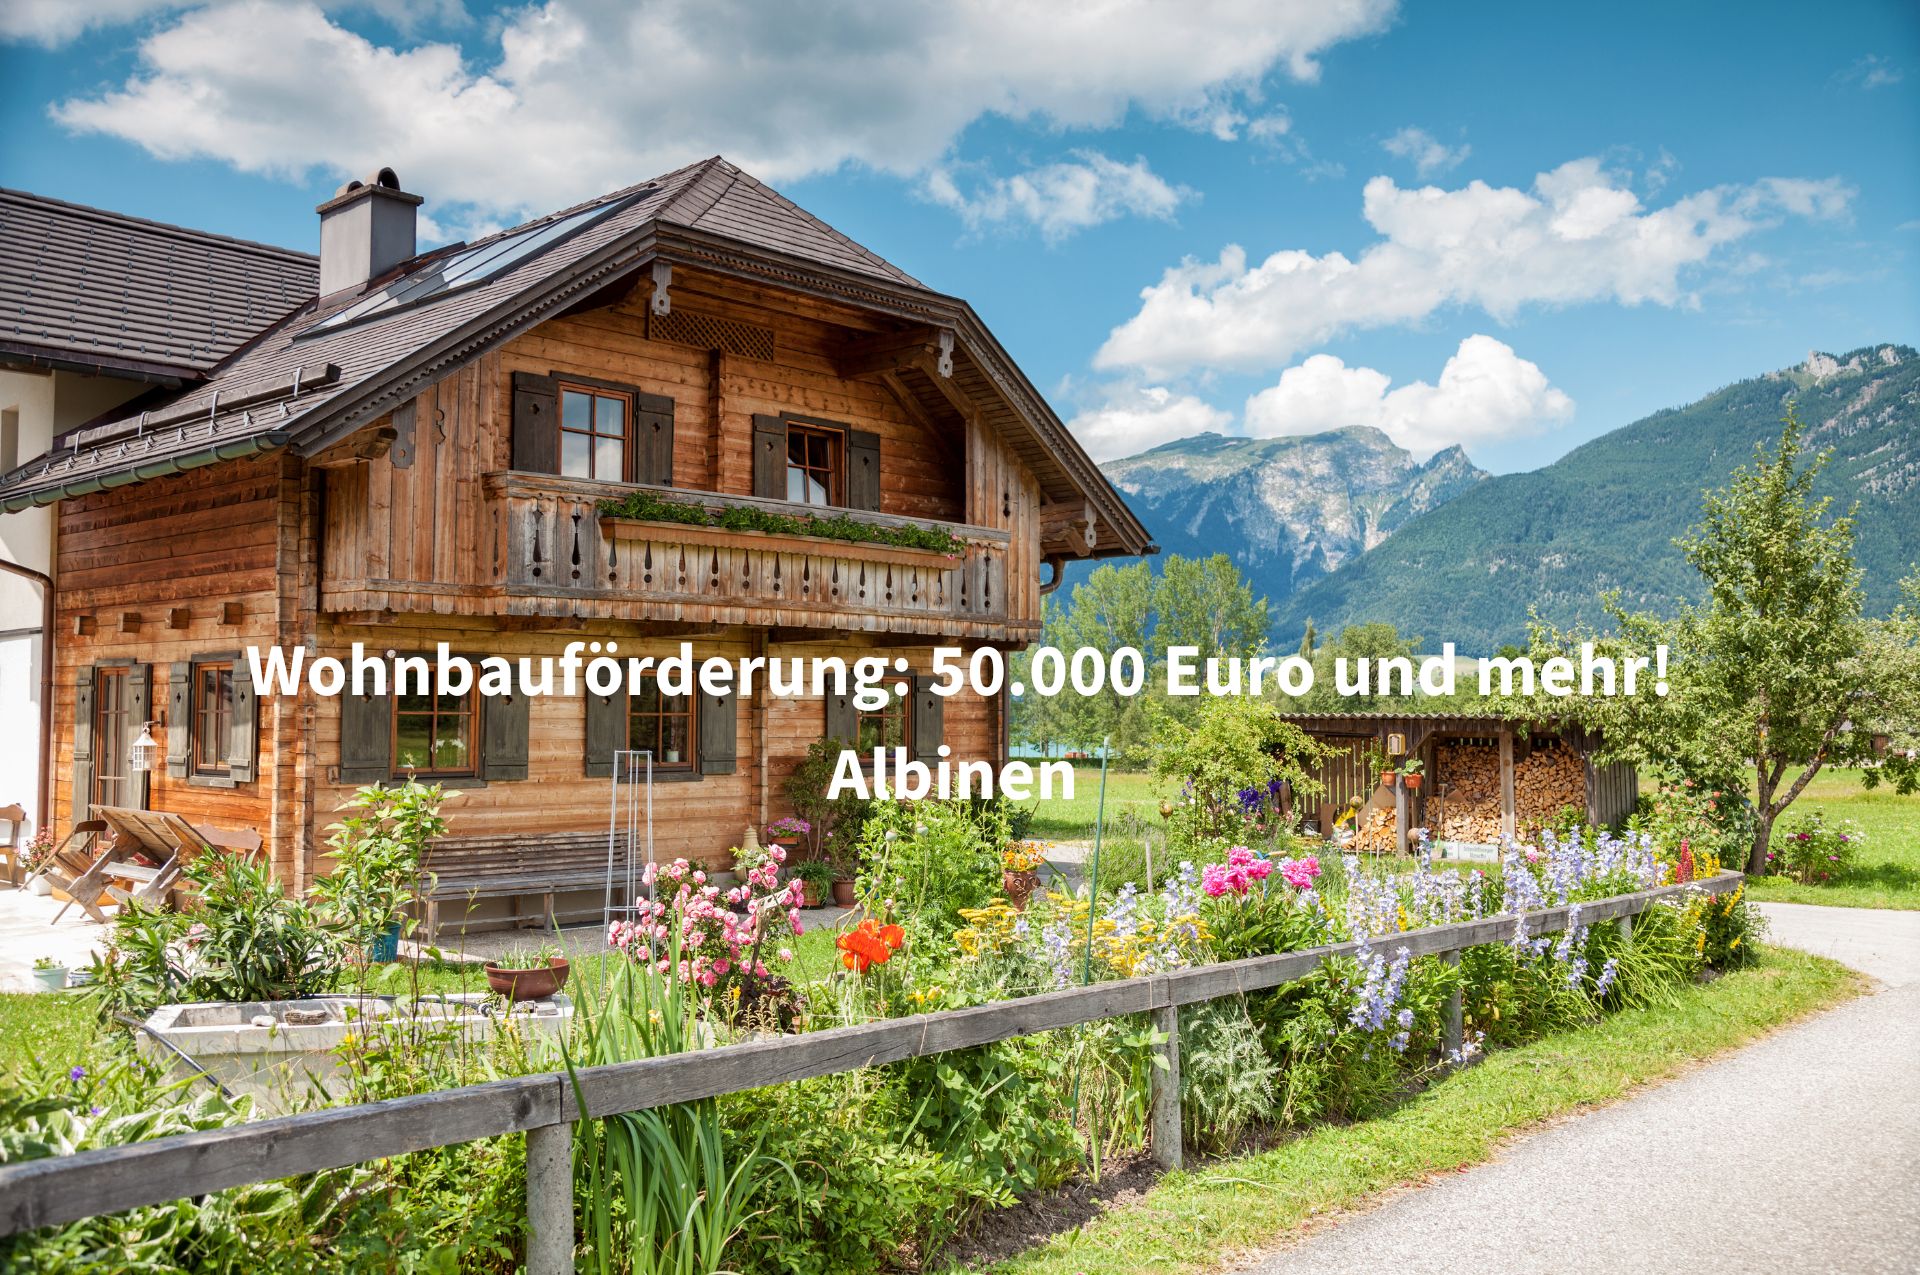 20.000 Euro für Umzug nach Albinen in der Schweiz